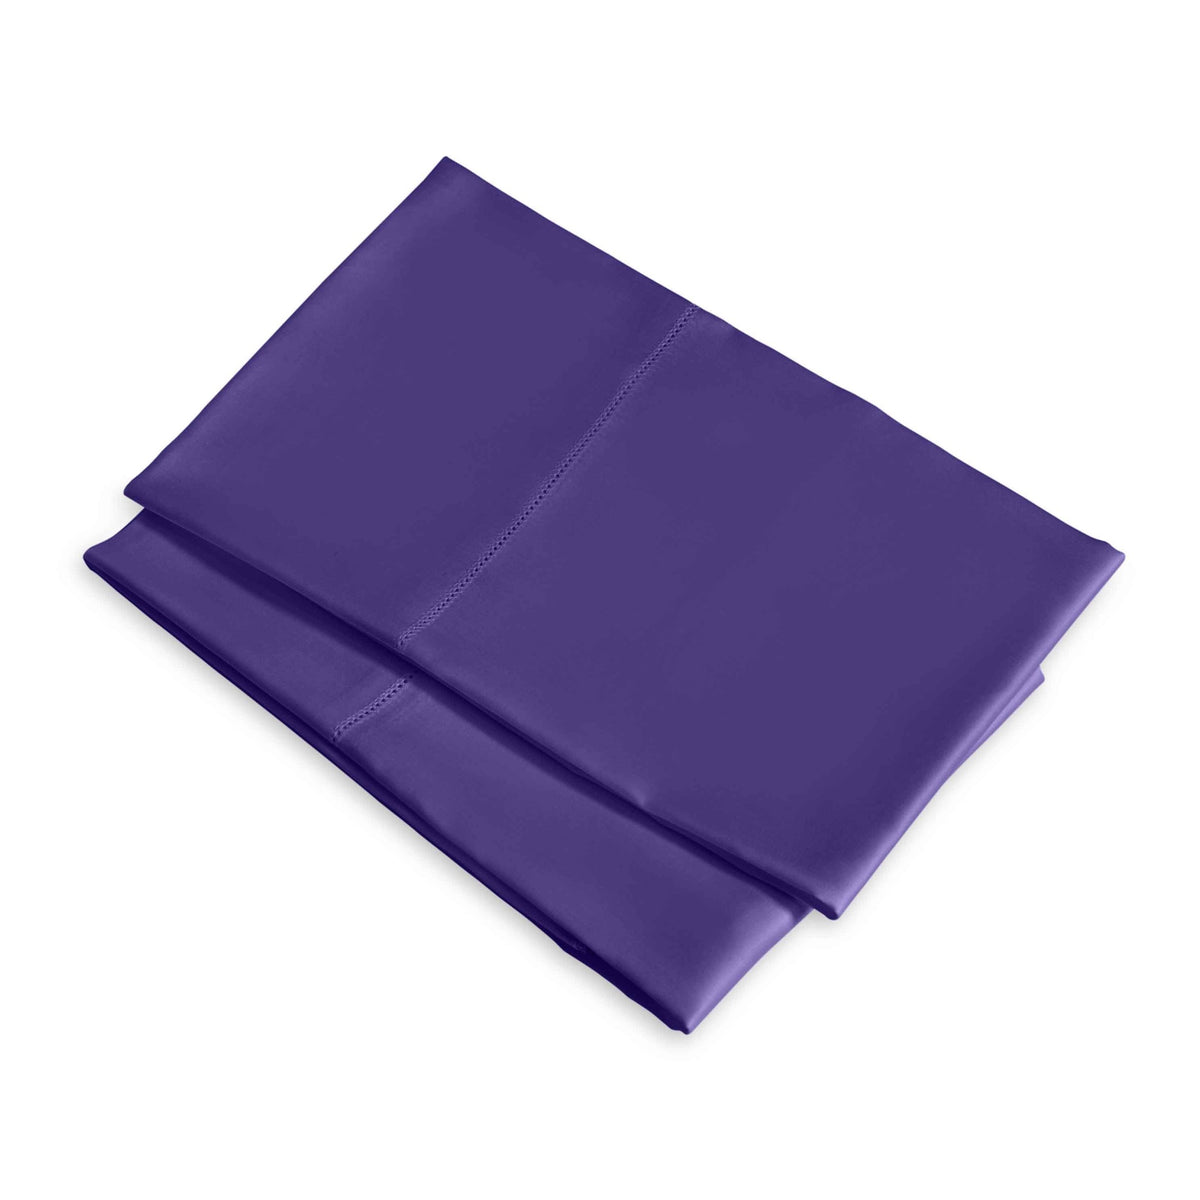 Clear Image of Signoria Raffaello Pillowcases in Violet Color